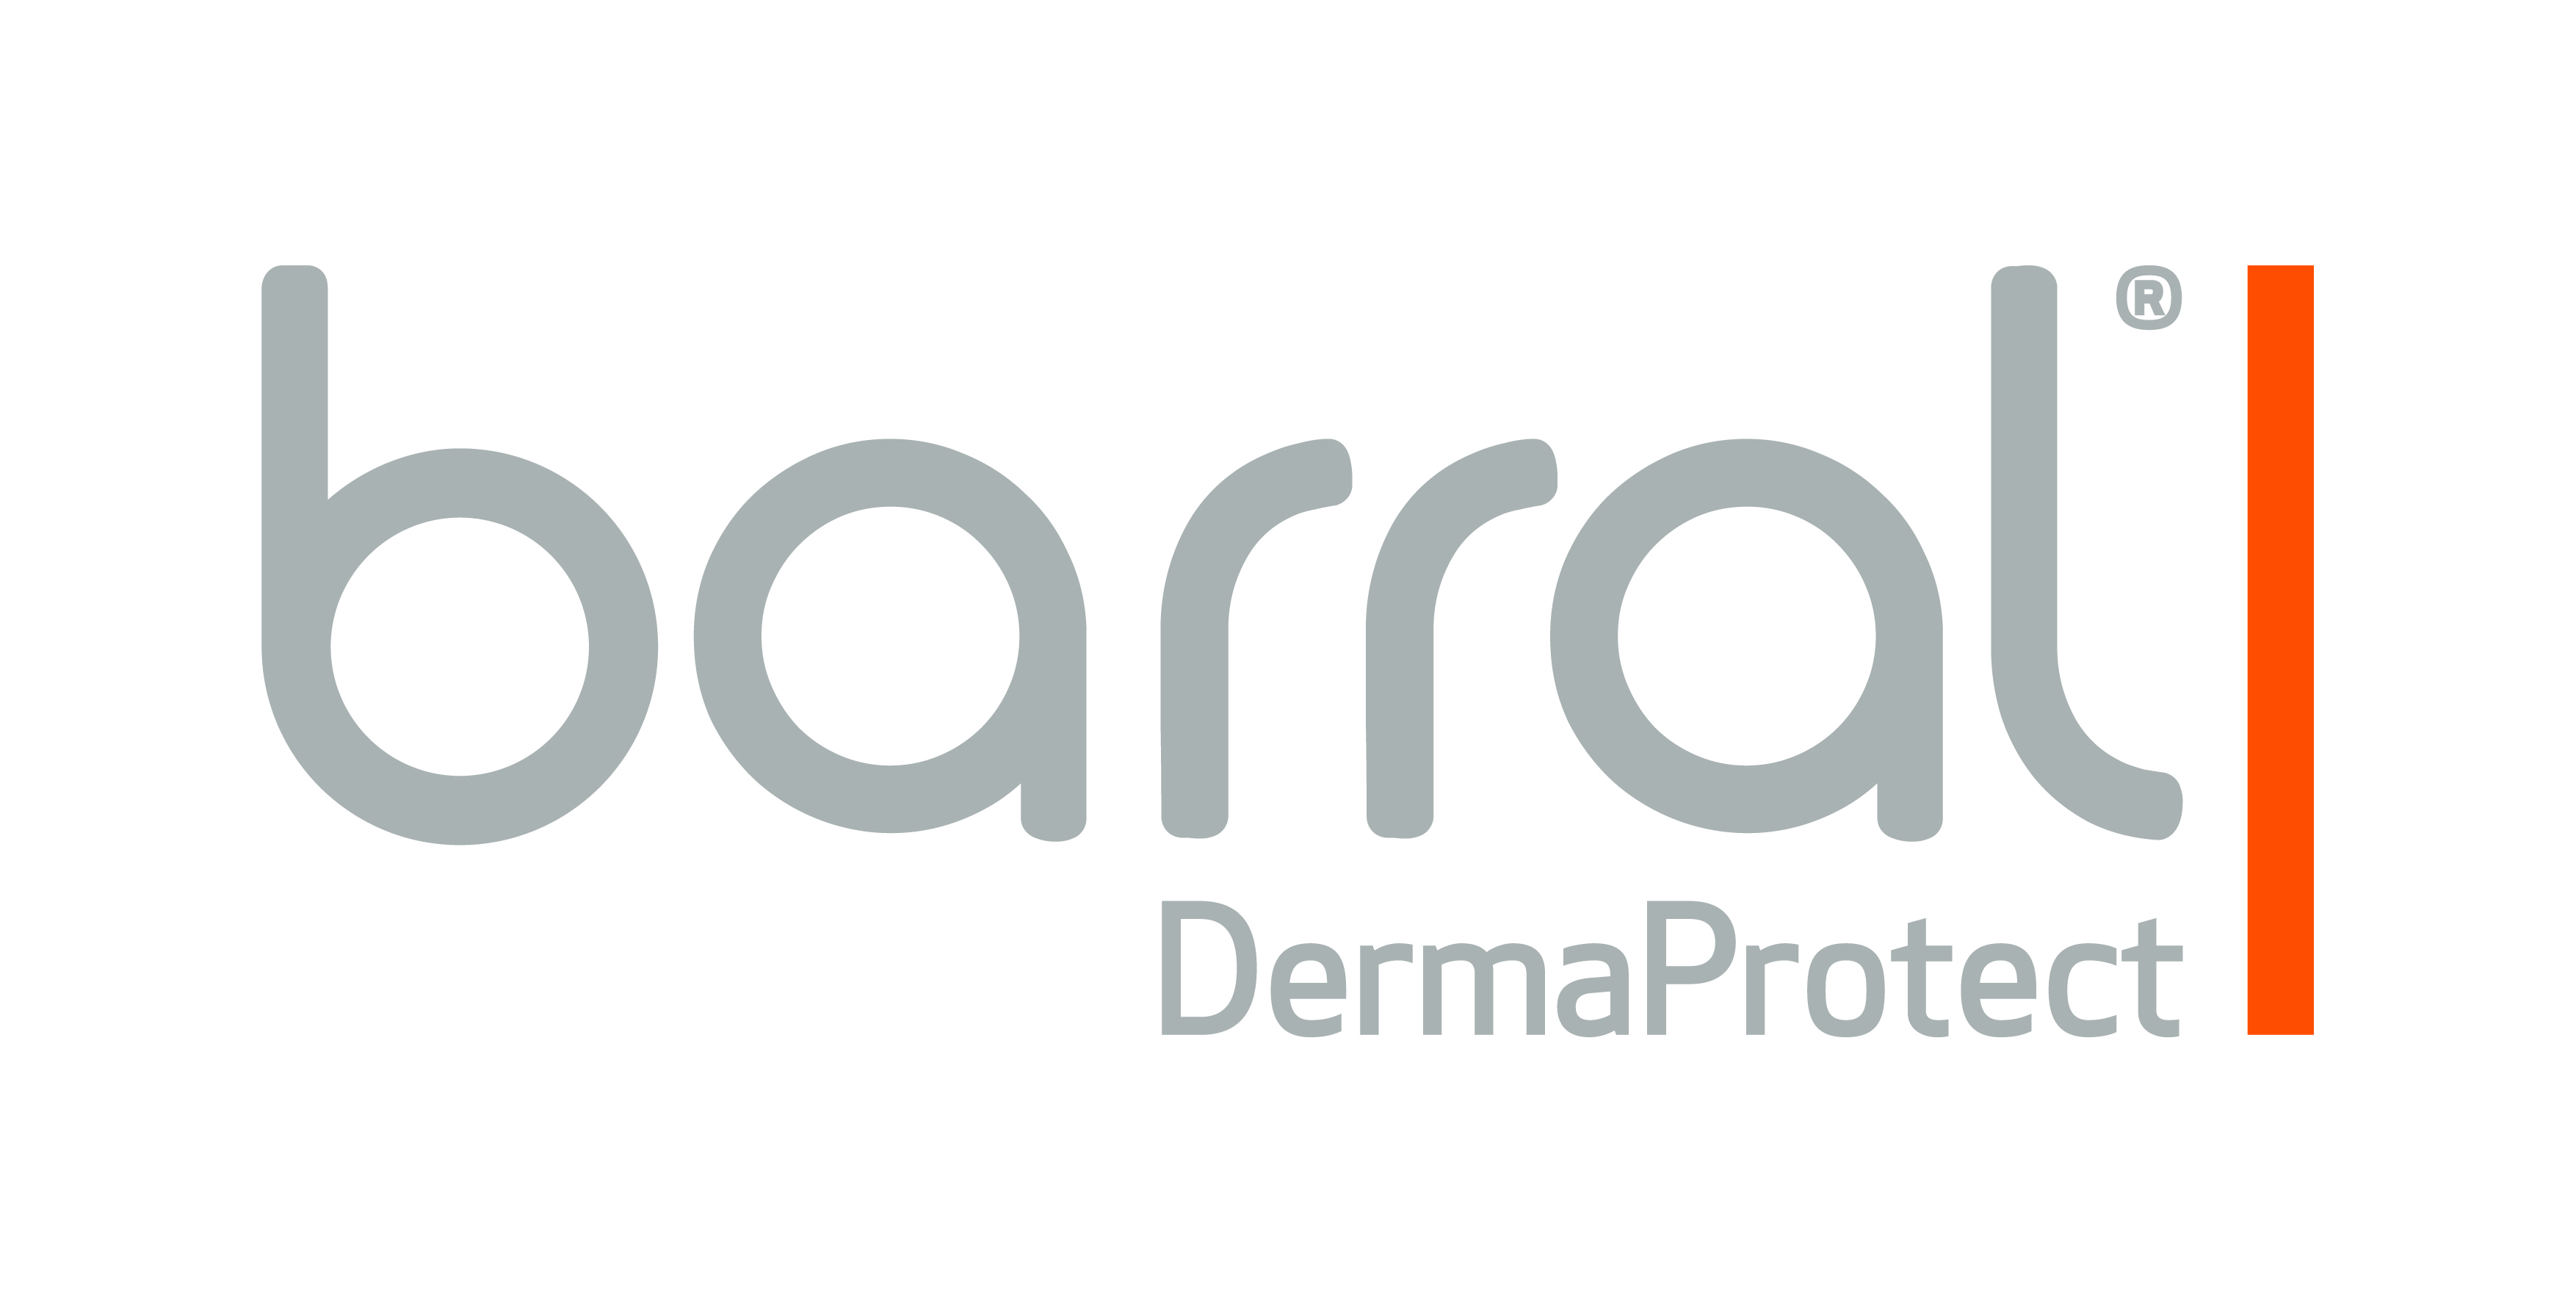 Barral Dermaprotect